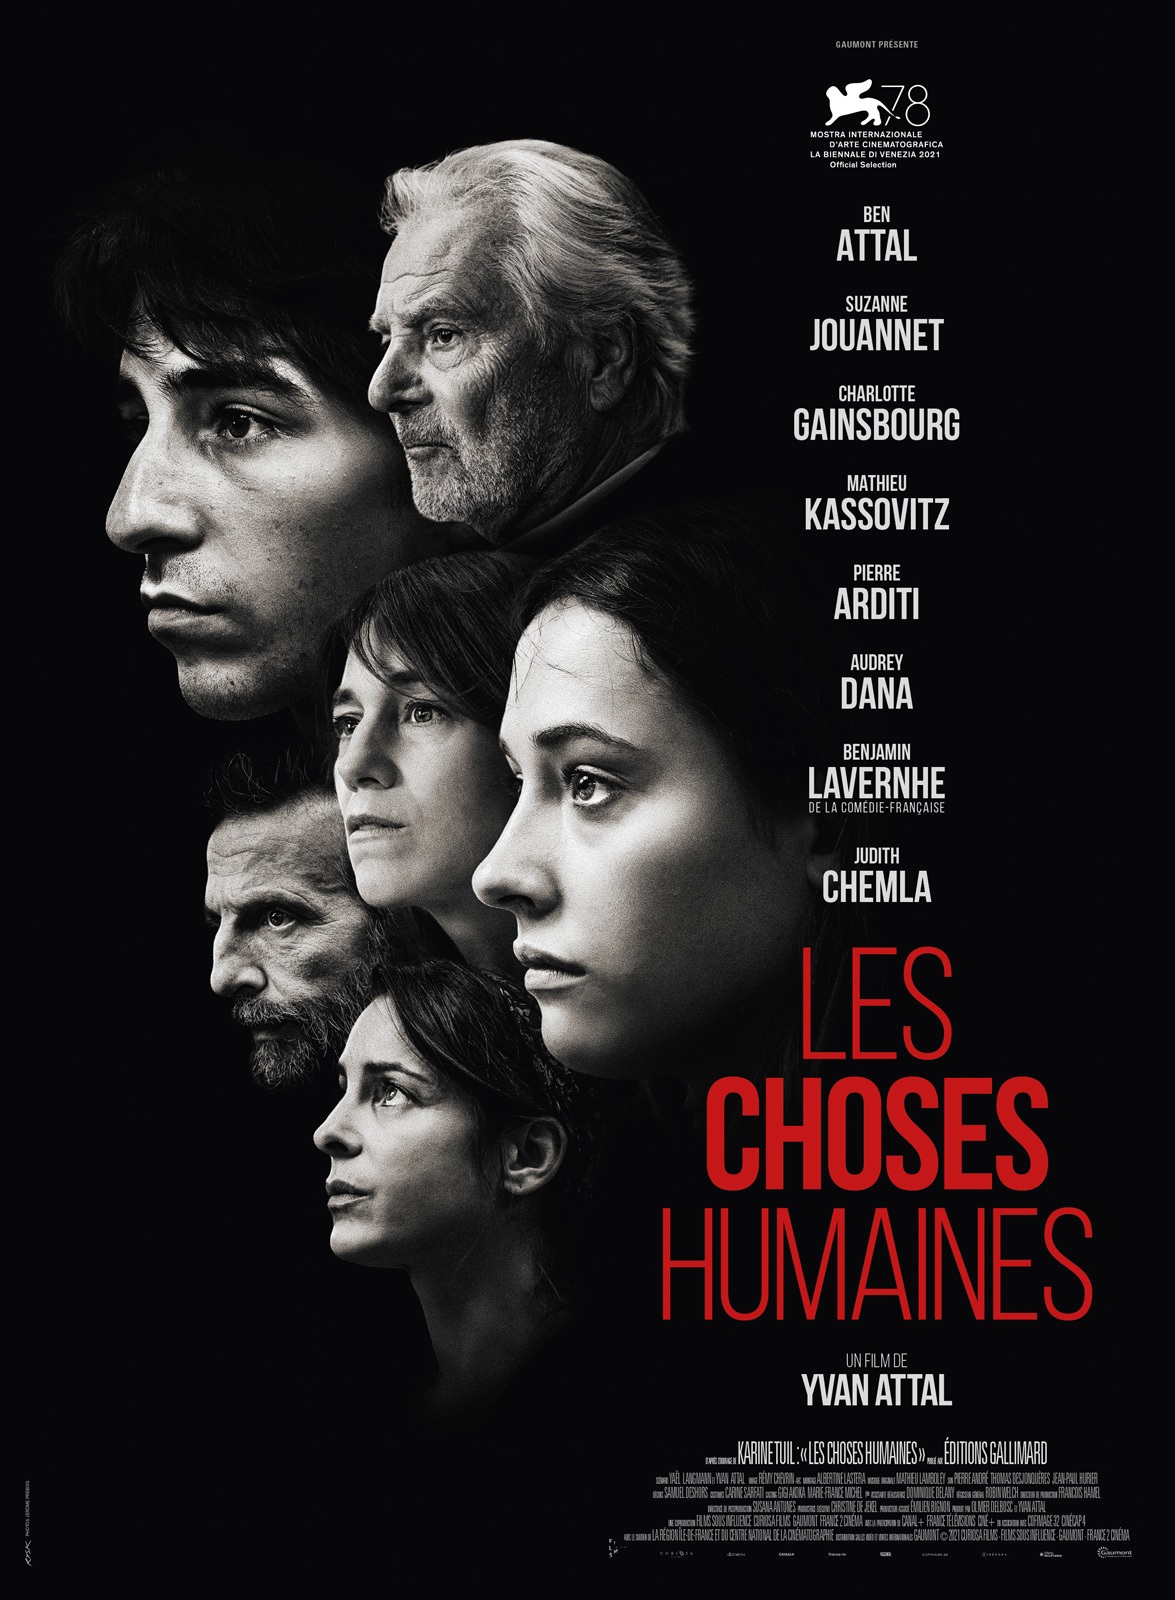 Bild vom französischen Filmplakat:Les choses humaines. 6 Gesichter gucken nach link in schwarz-weiß. Unten rechts steht der Filmtitel in roter Schrift.